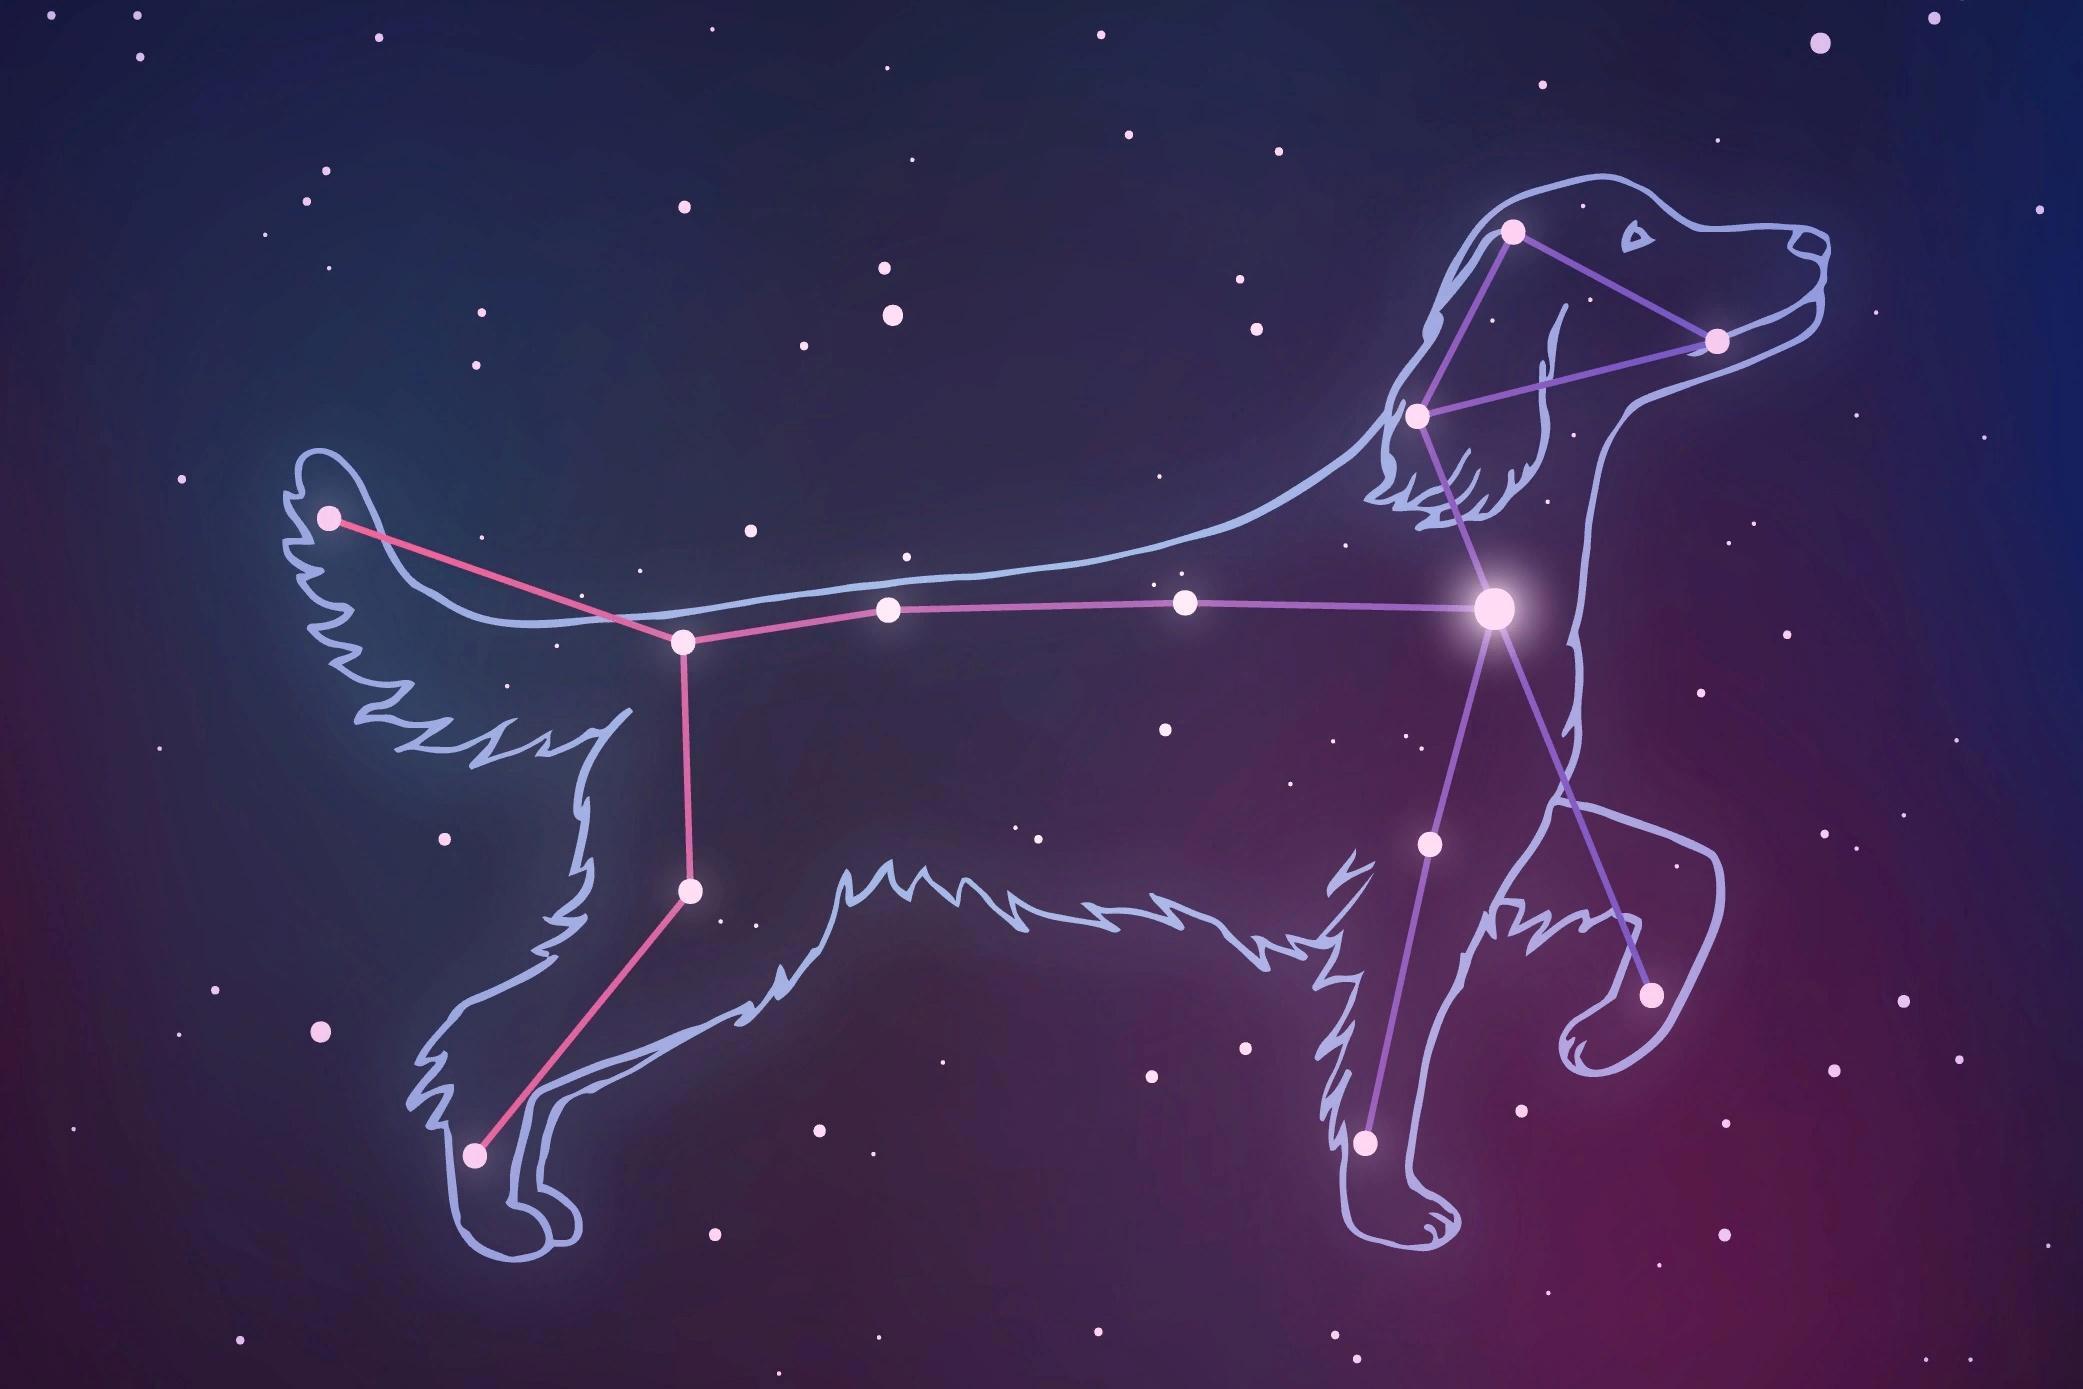 Яркая звезда в созвездии большого пса. Созвездие большого пса Сириус. Созвездие Сириус Альфа большого пса. Созвездие большого пса со звездой Сириус на небе. Канис Майер Созвездие.